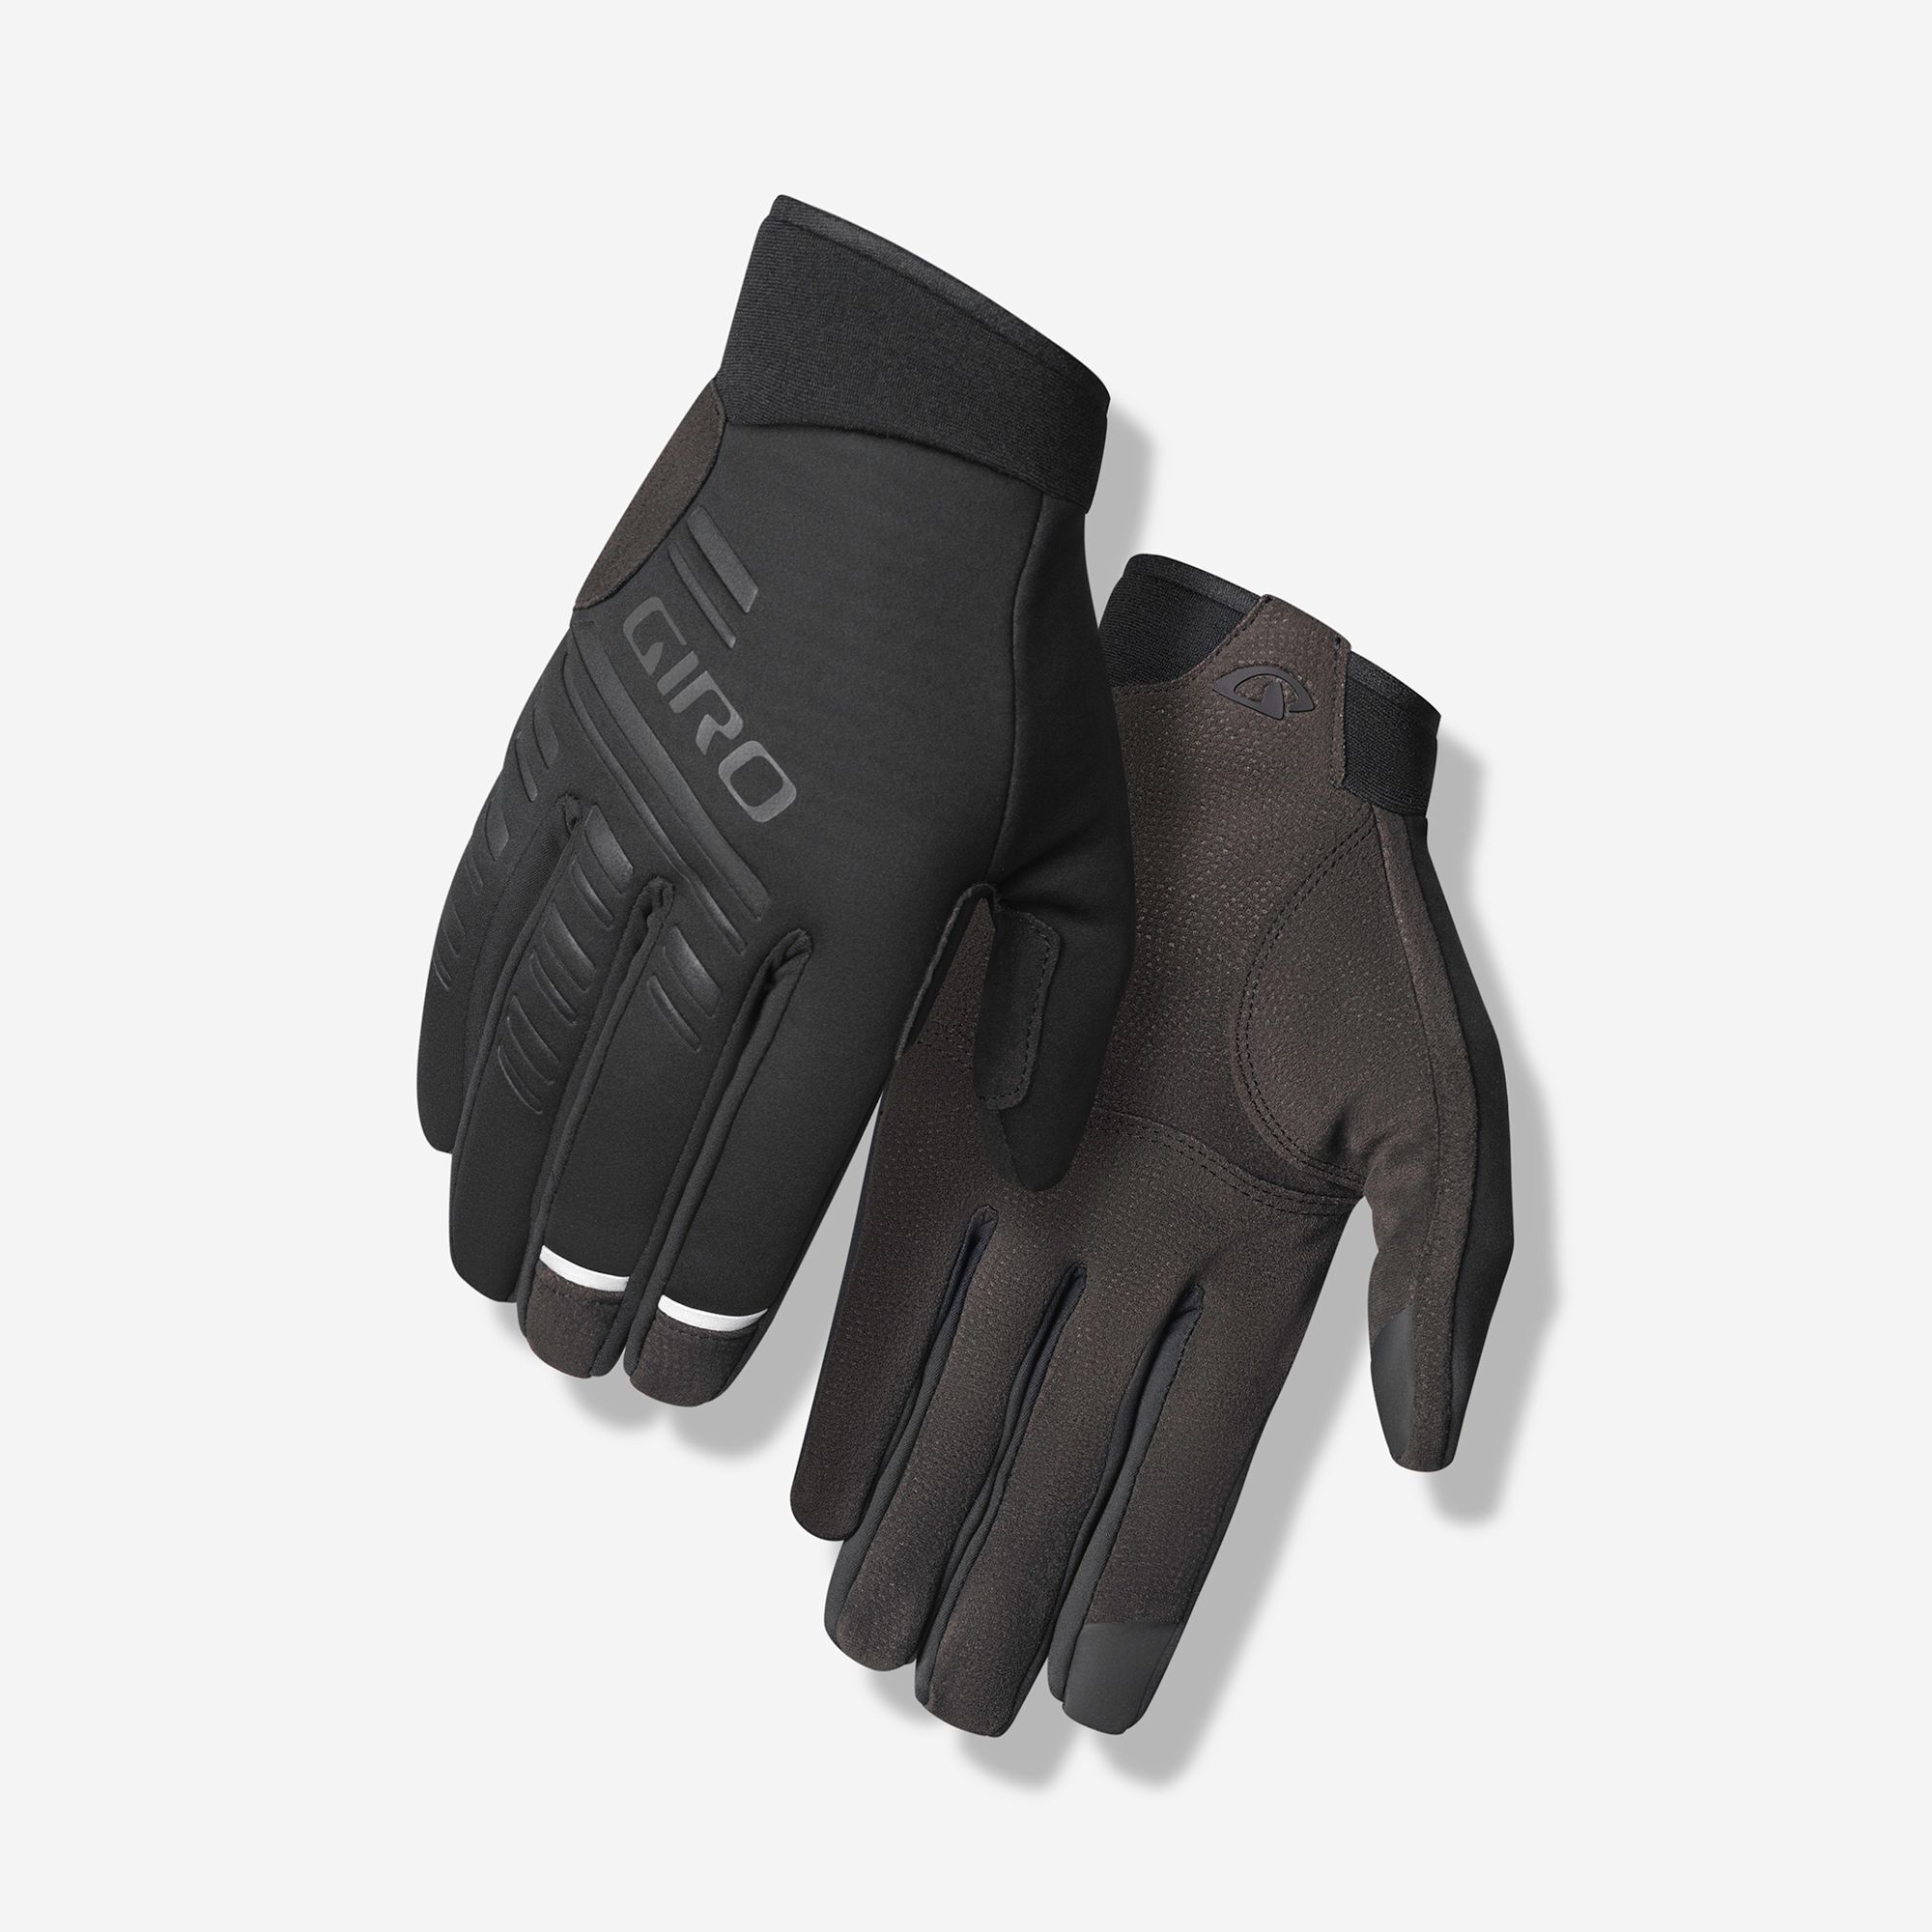 Giro Supernatural Mens Road Cycling Gloves